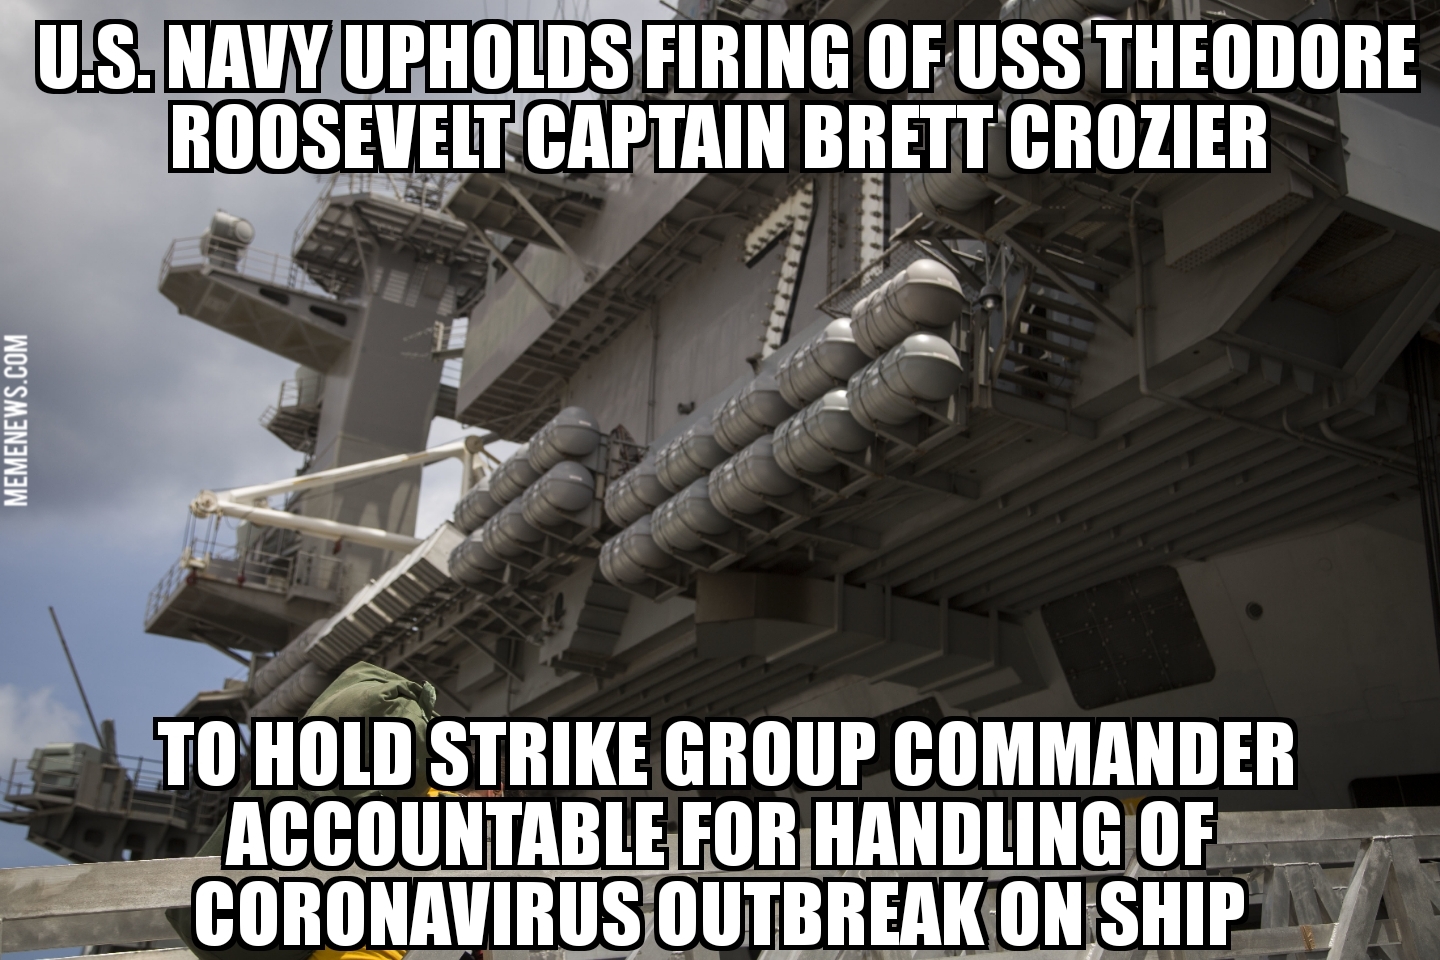 Navy upholds firing of Brett Crozier